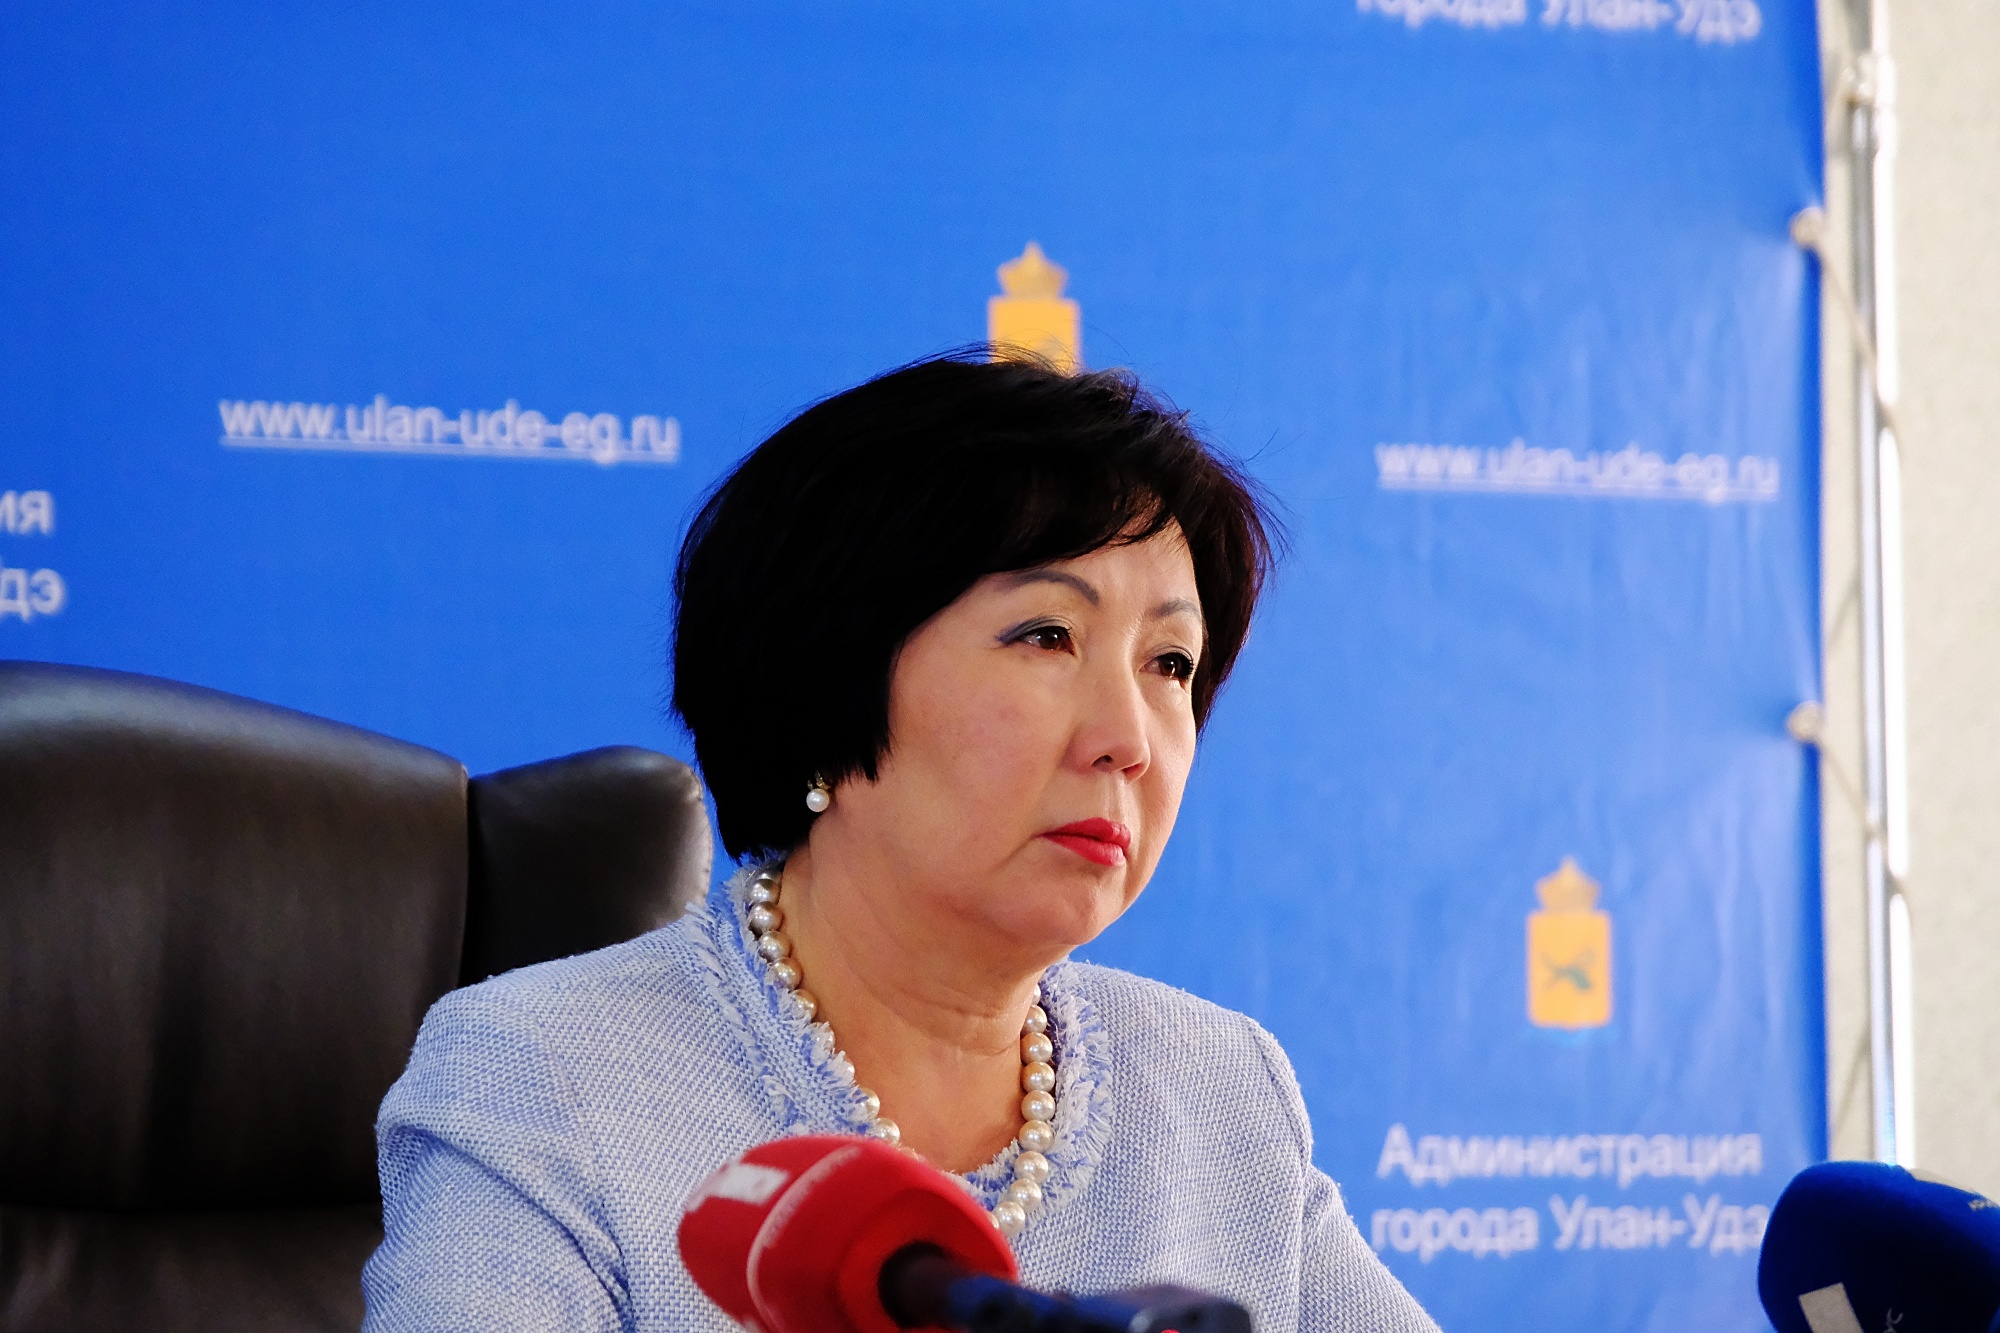 Фото Ульяна Афанасьева уволилась из комитета по образованию Улан-Удэ